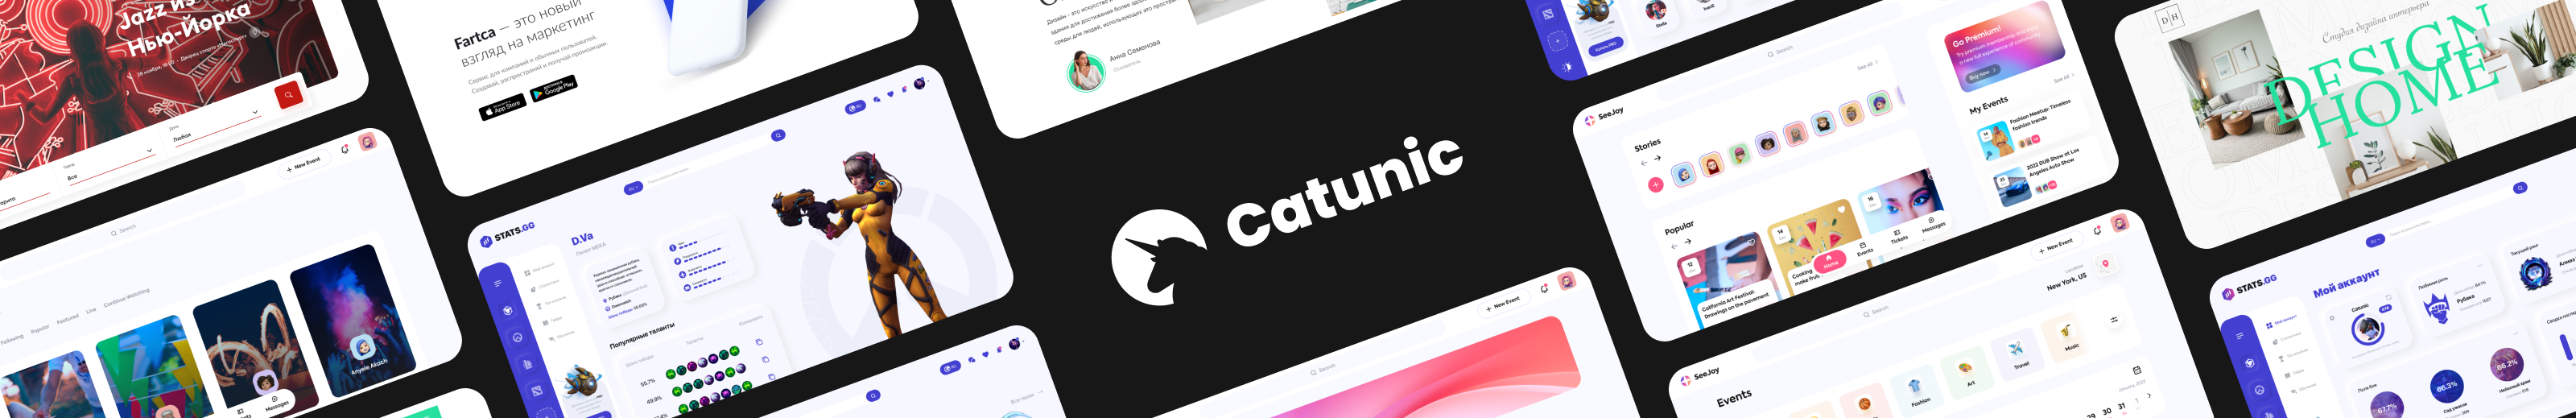 Catrina Catunic's profile banner